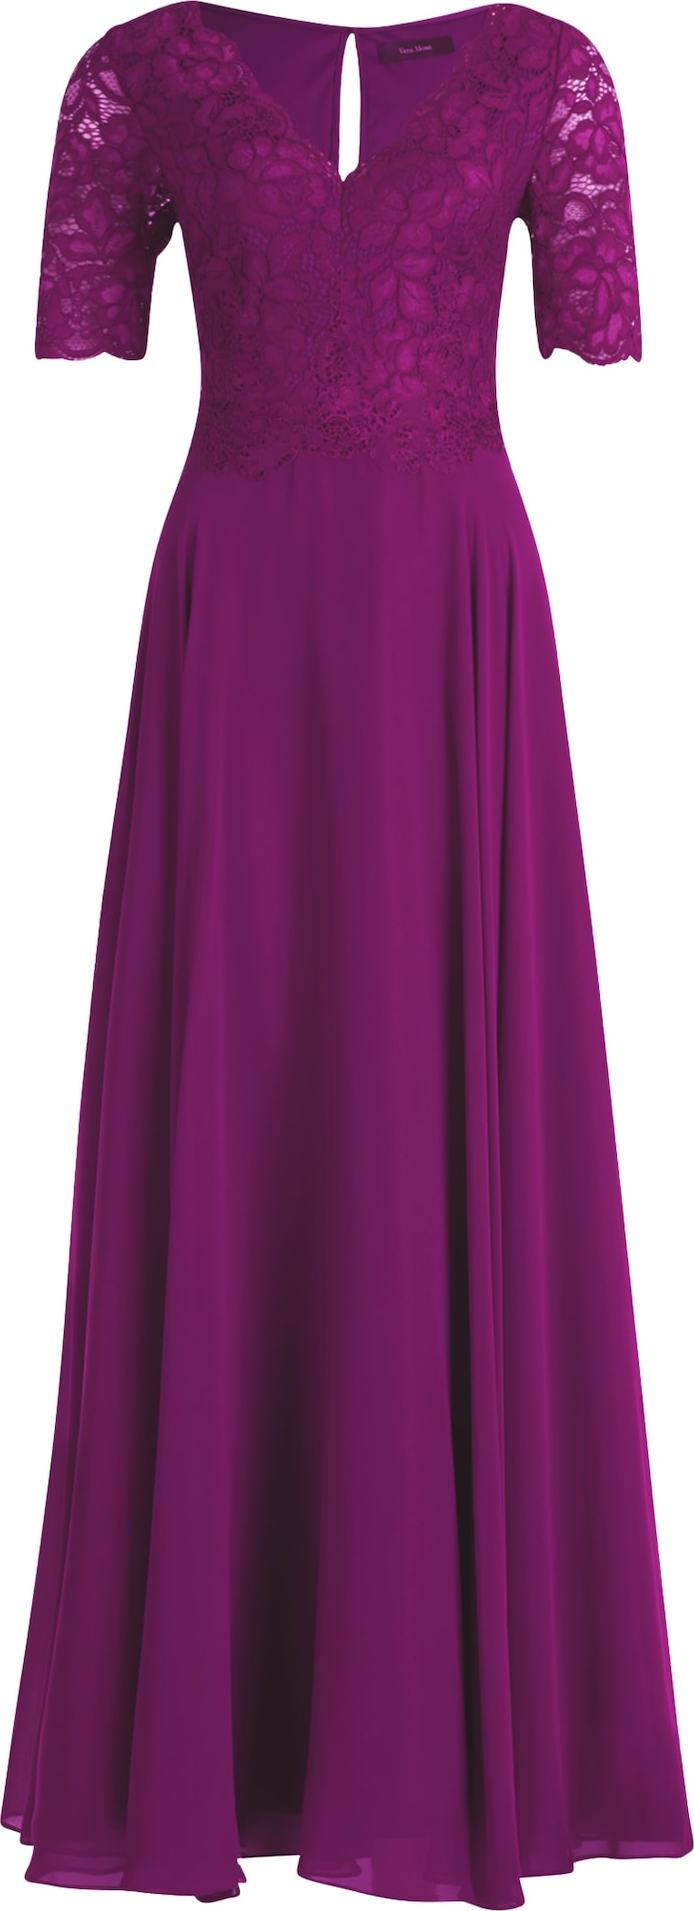 Společenské šaty Vera Mont fialová